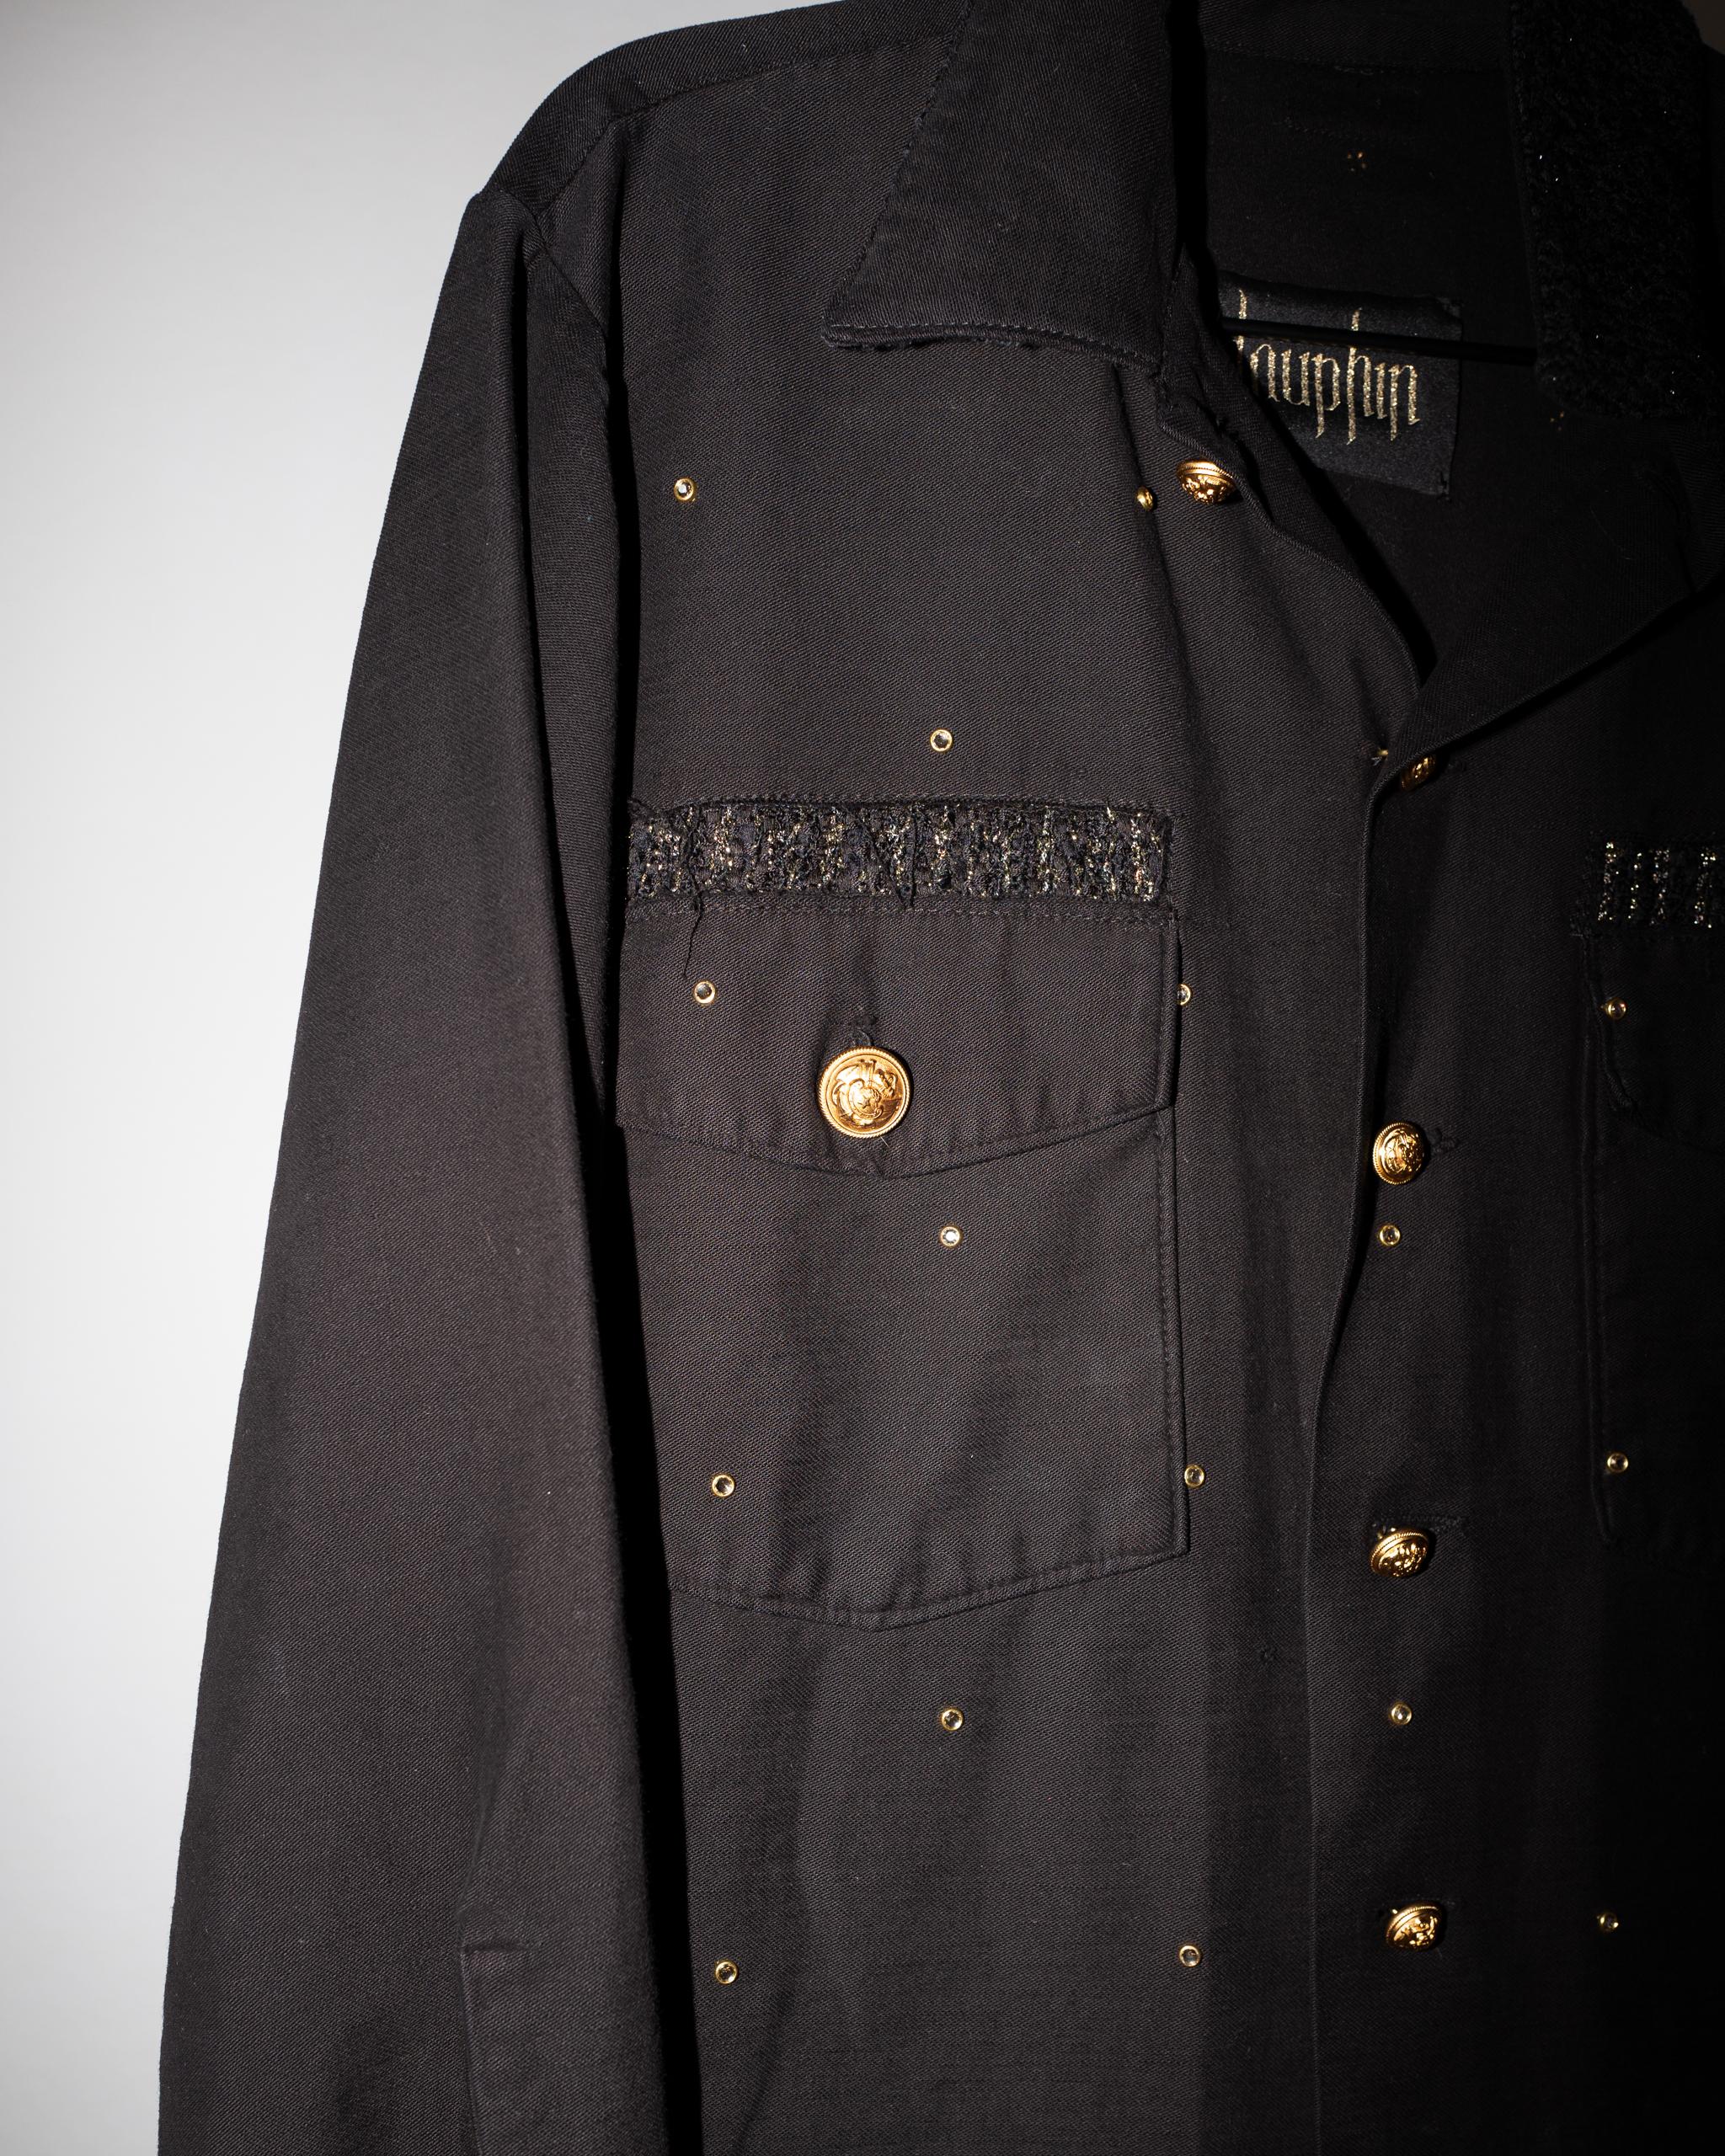 Vintage ein von einer Art Remade Military Us Jacke gefärbt schwarz mit Swarovski Crystal Embellishment und Gold Lurex Black Tweed über Taschen, Vintage vergoldet Messing Knöpfe aus Paris um die 40 